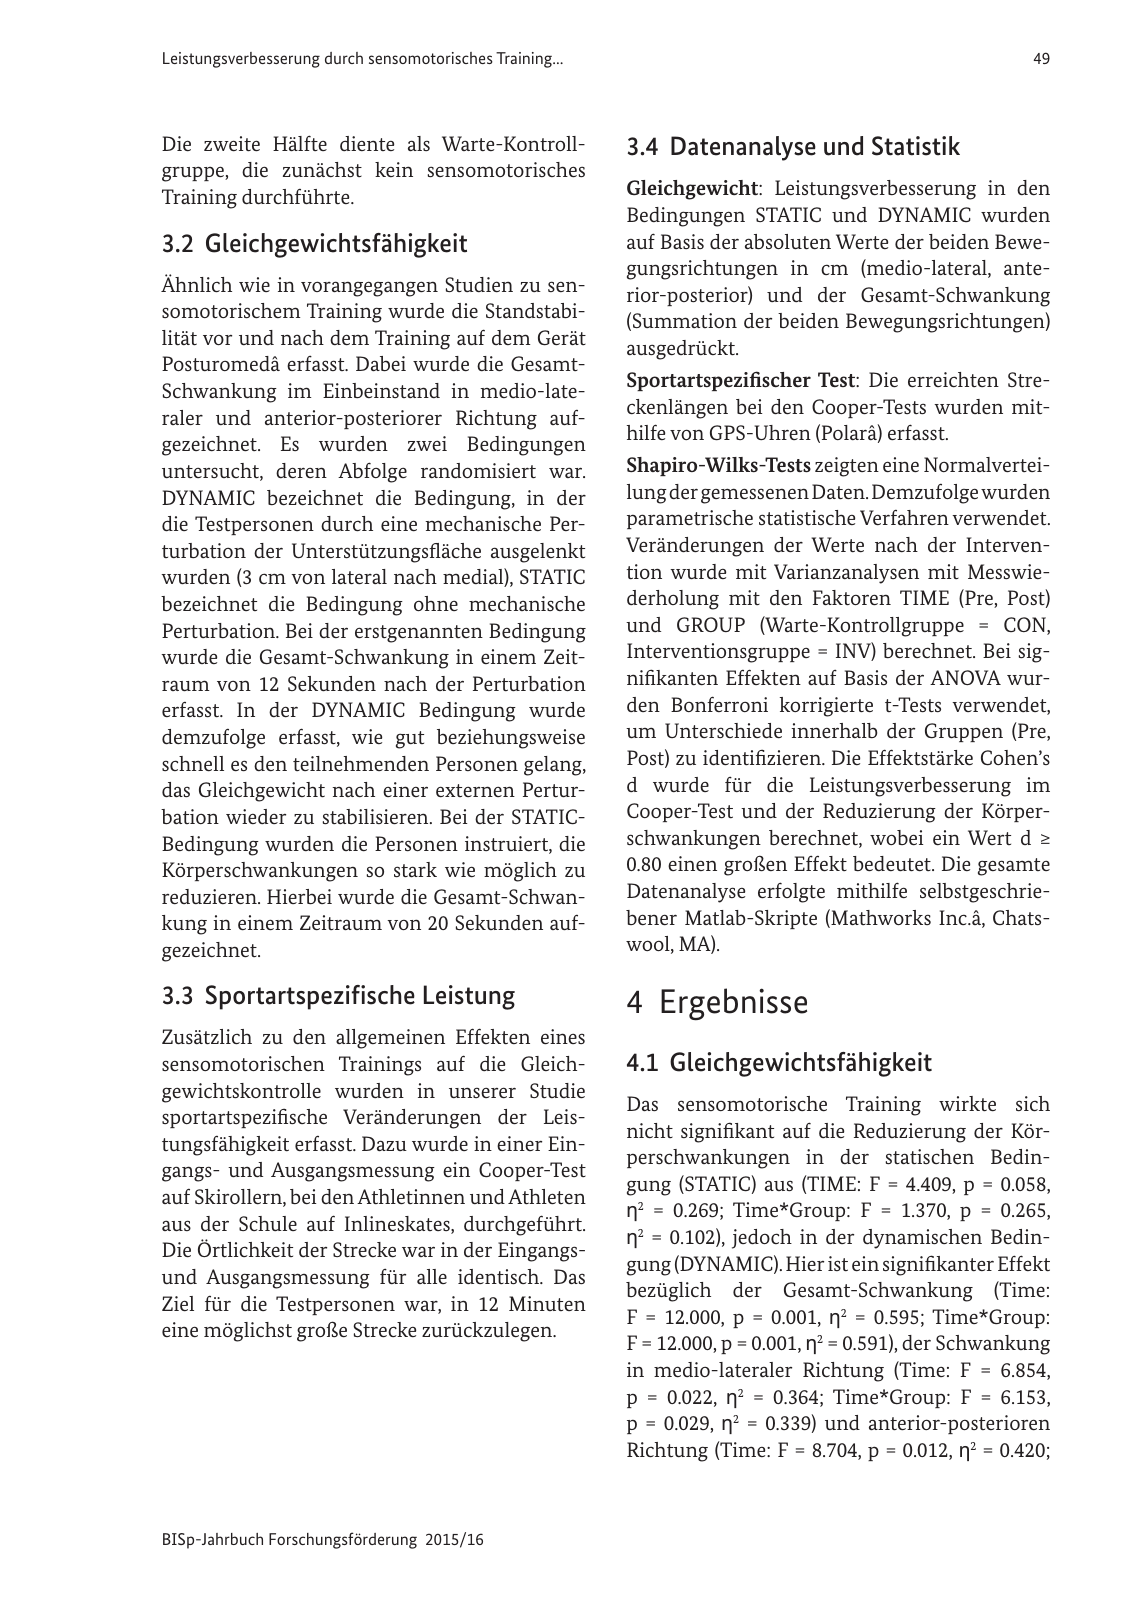 Vorschau BISp-Jahrbuch Forschungsförderung 2015/16 Seite 51